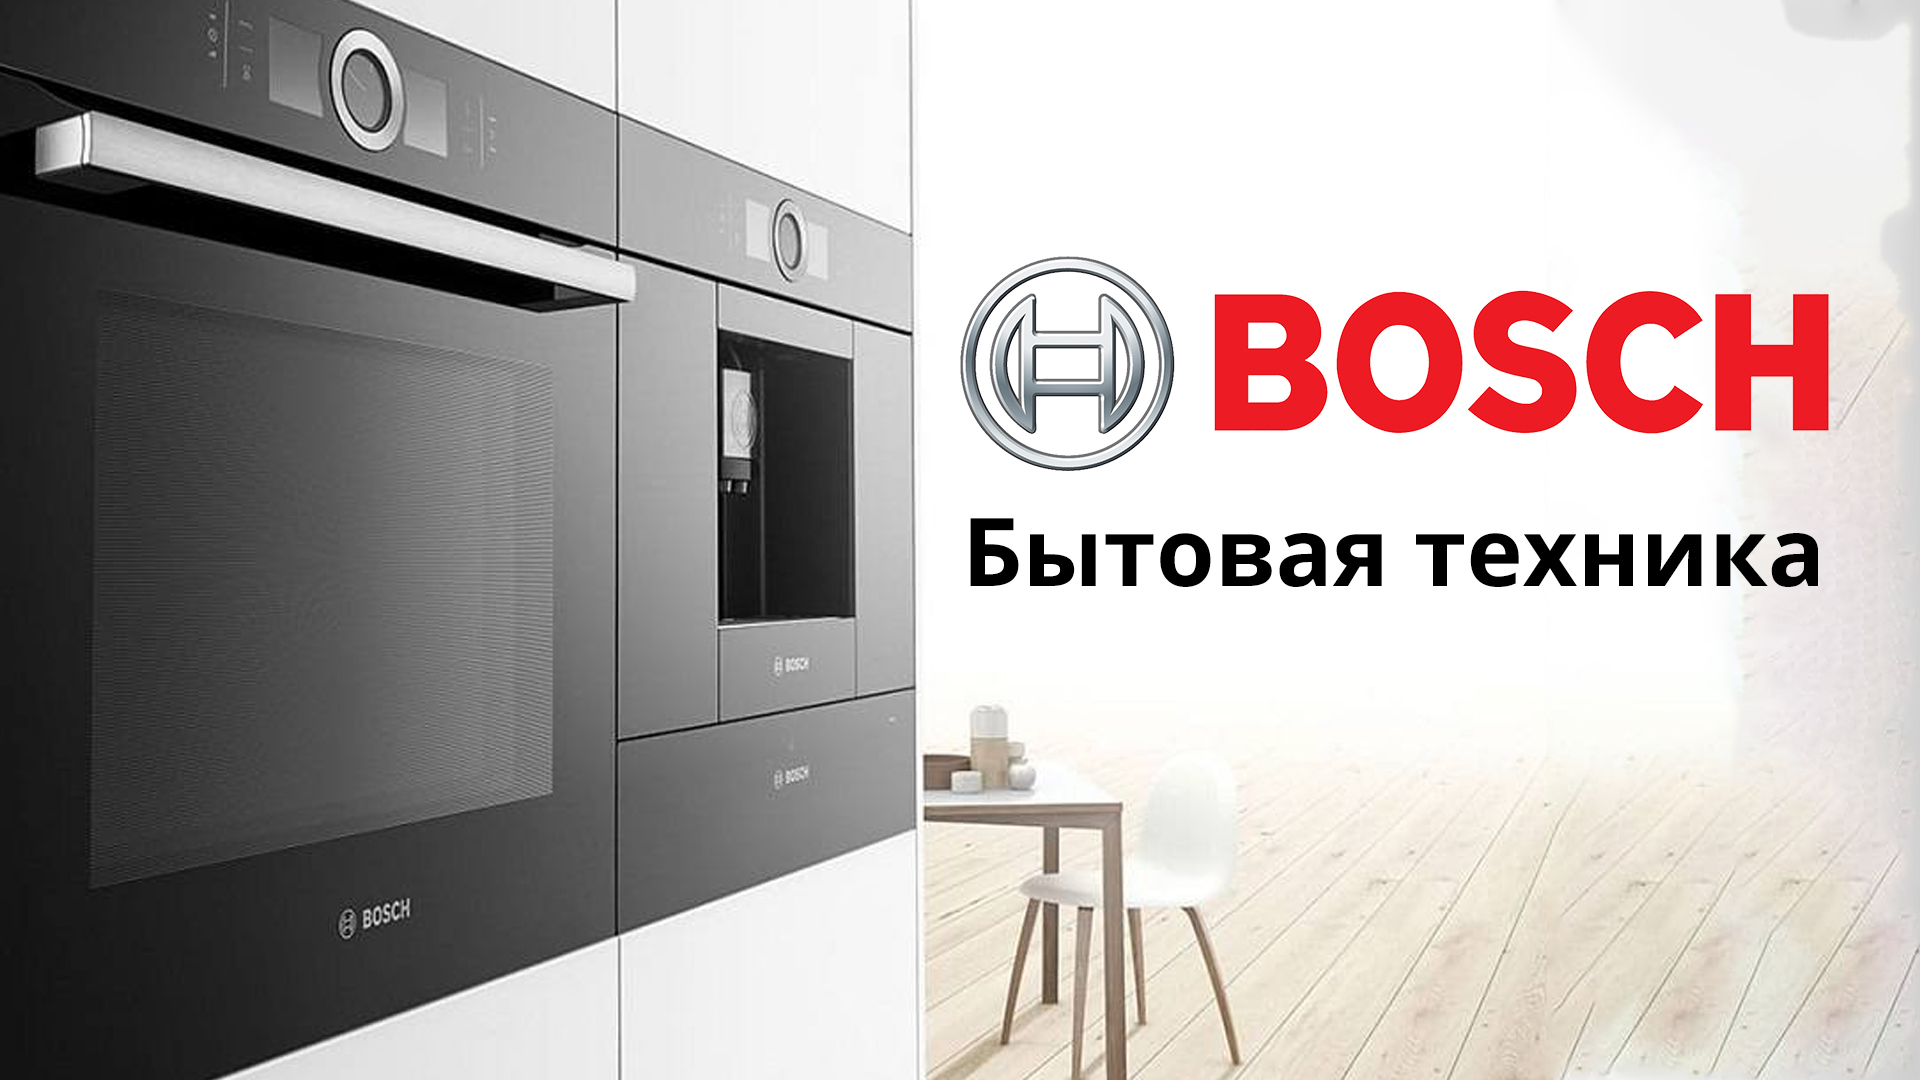 Bosch бренд